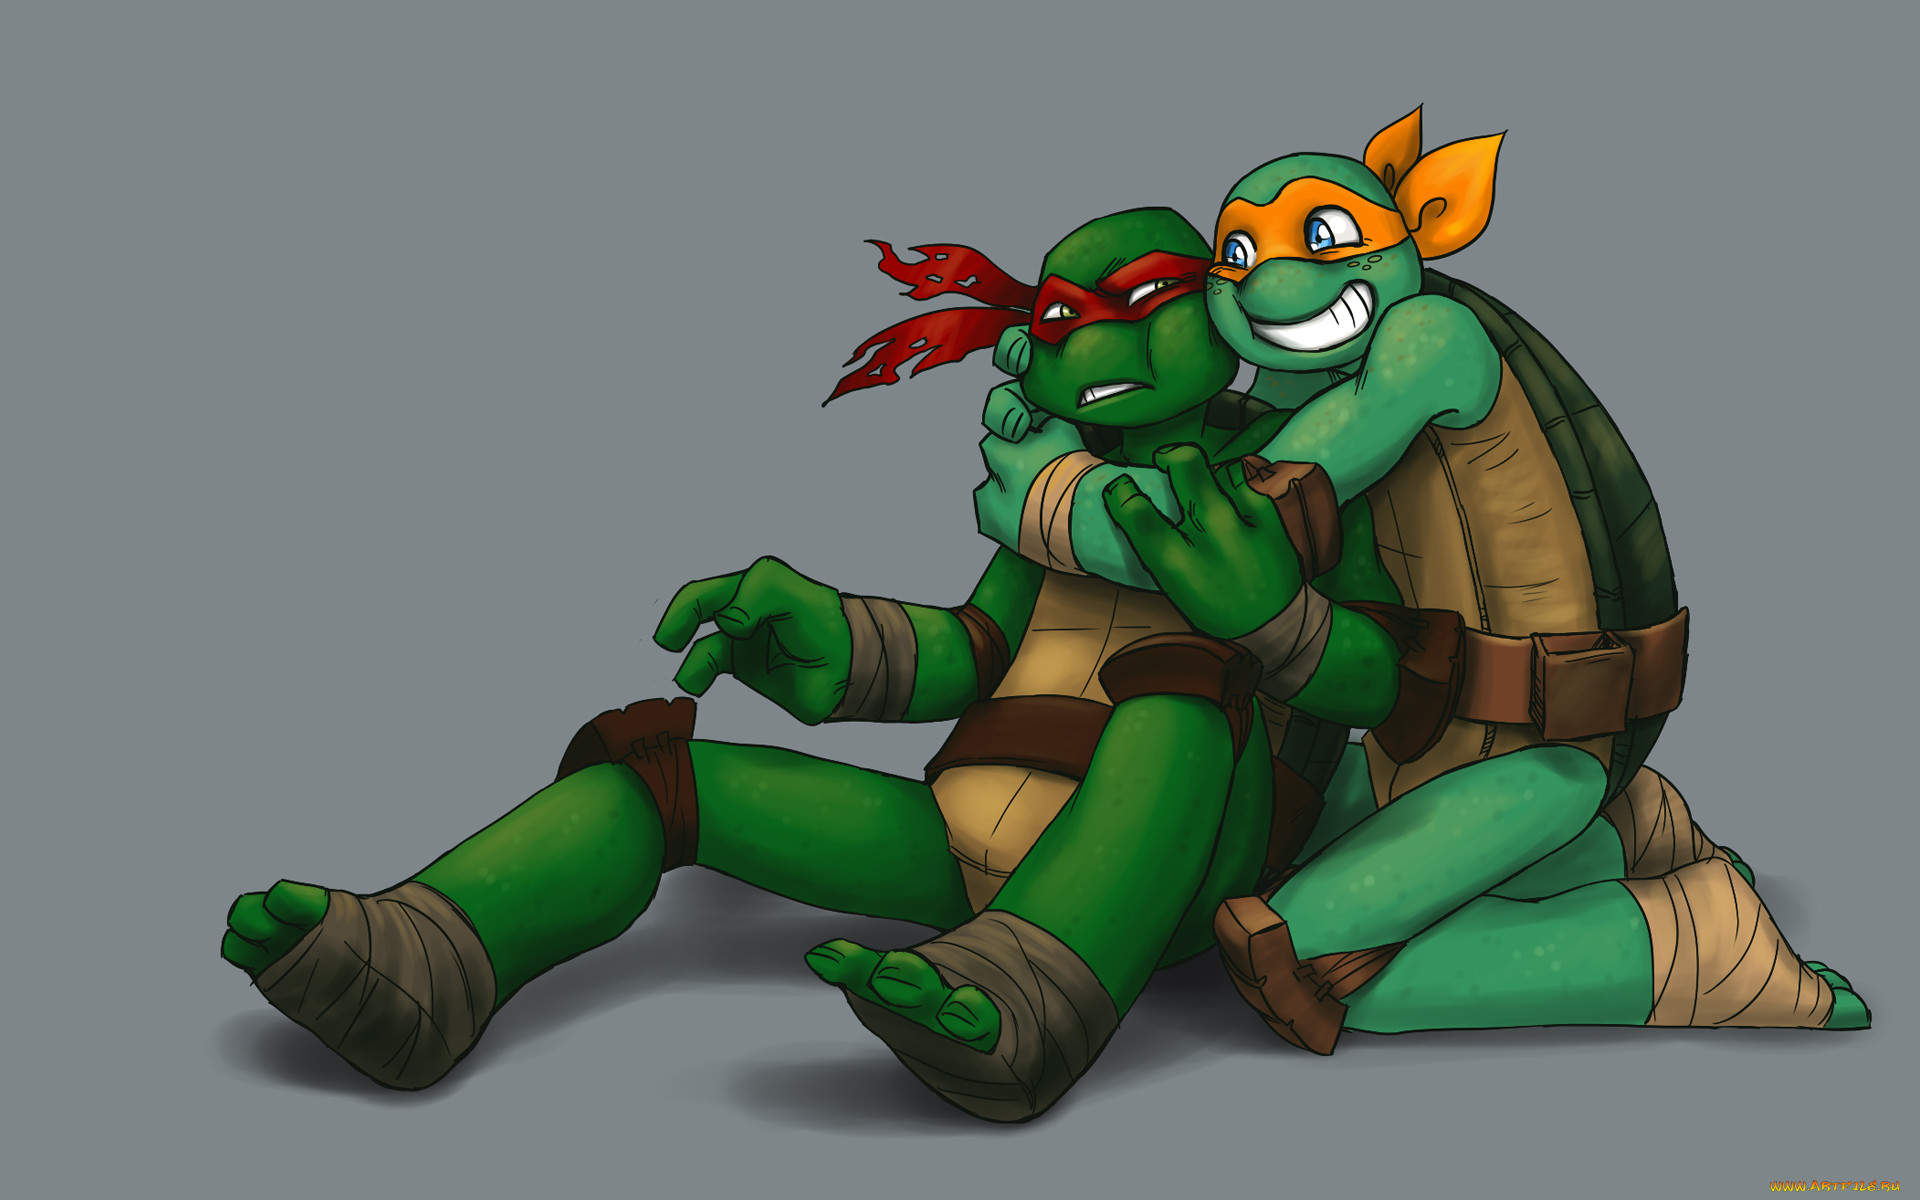 Ninja turtles kiss